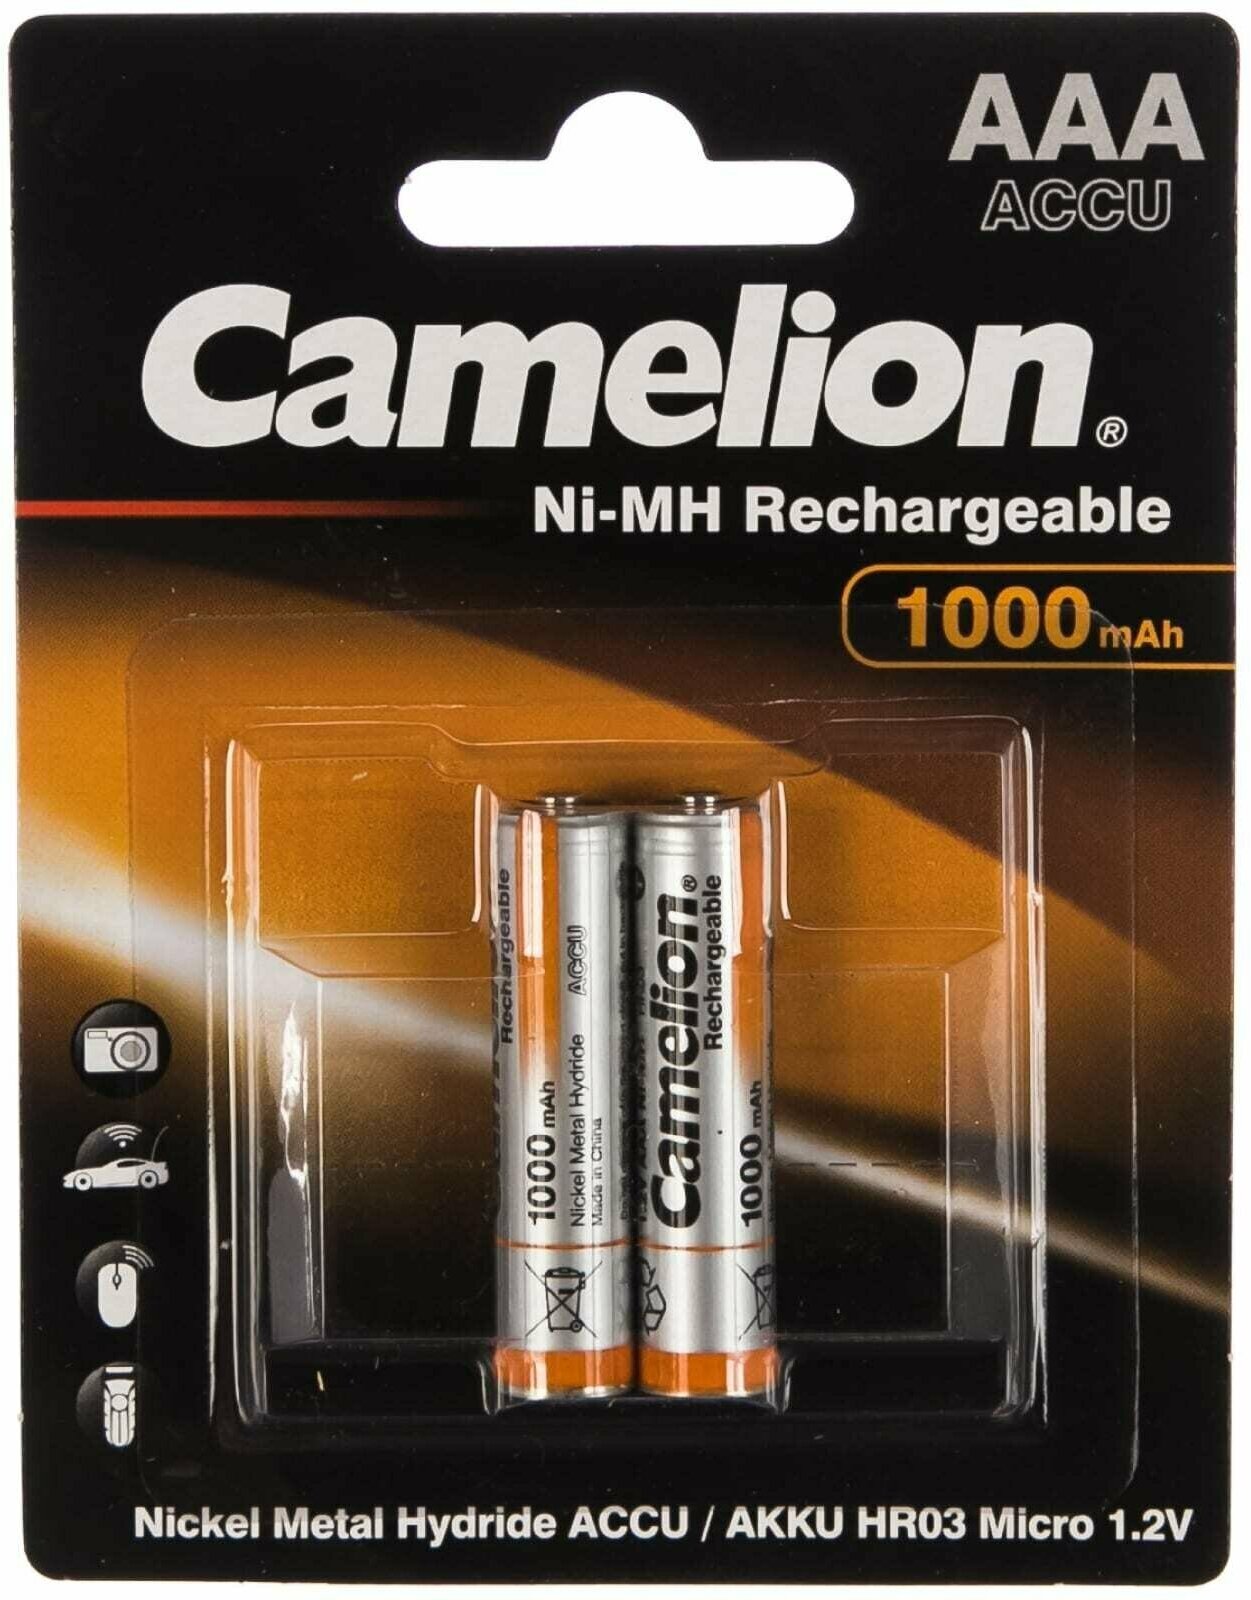 Аккумулятор Ni-Mh 1000 мА·ч 12 В Camelion NH-AAA1000